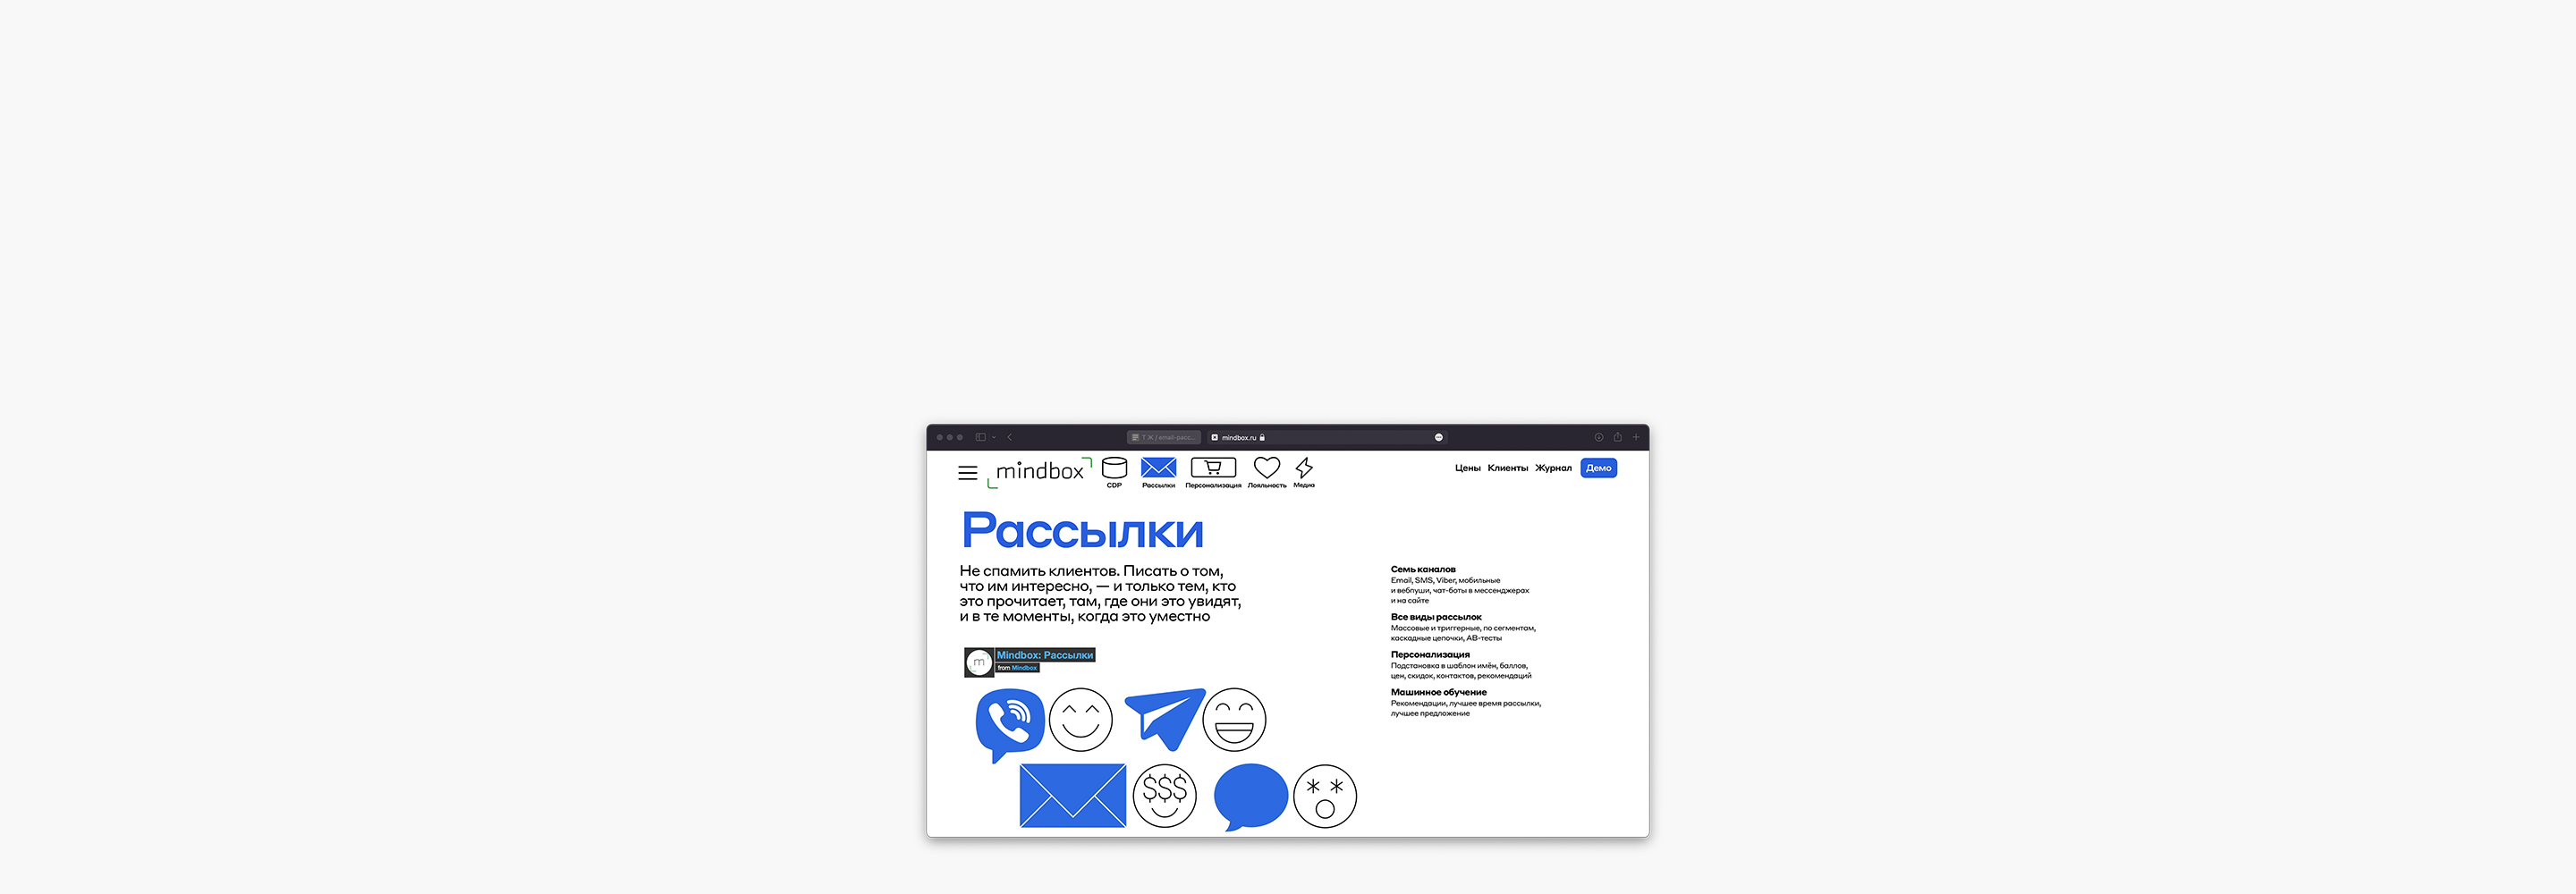 5 сервисов для рассылки, которые работают в России